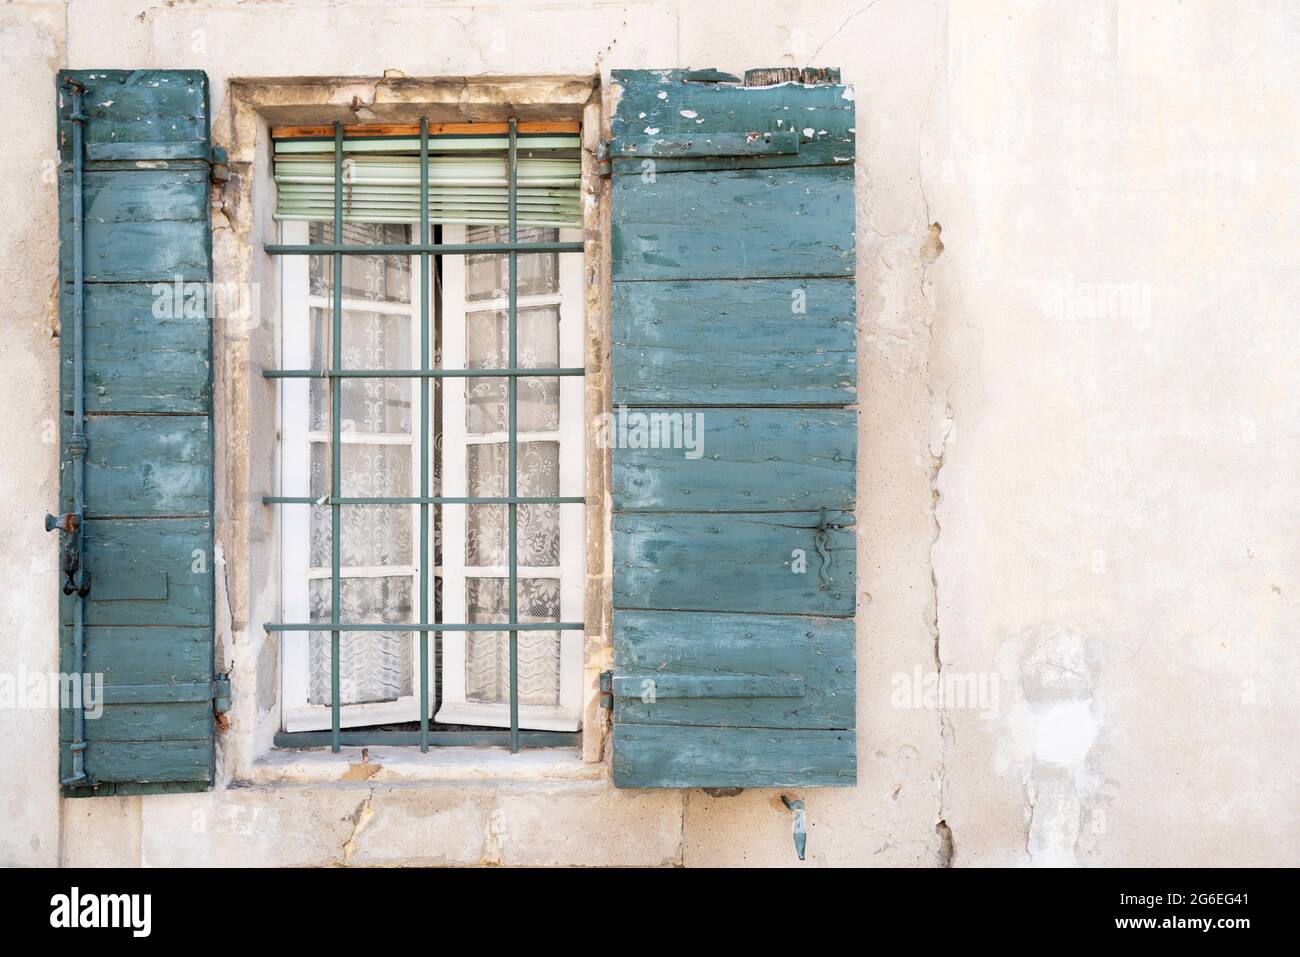 Facciata antica con finestra a graticcio con tenda e persiane in legno. Foto Stock